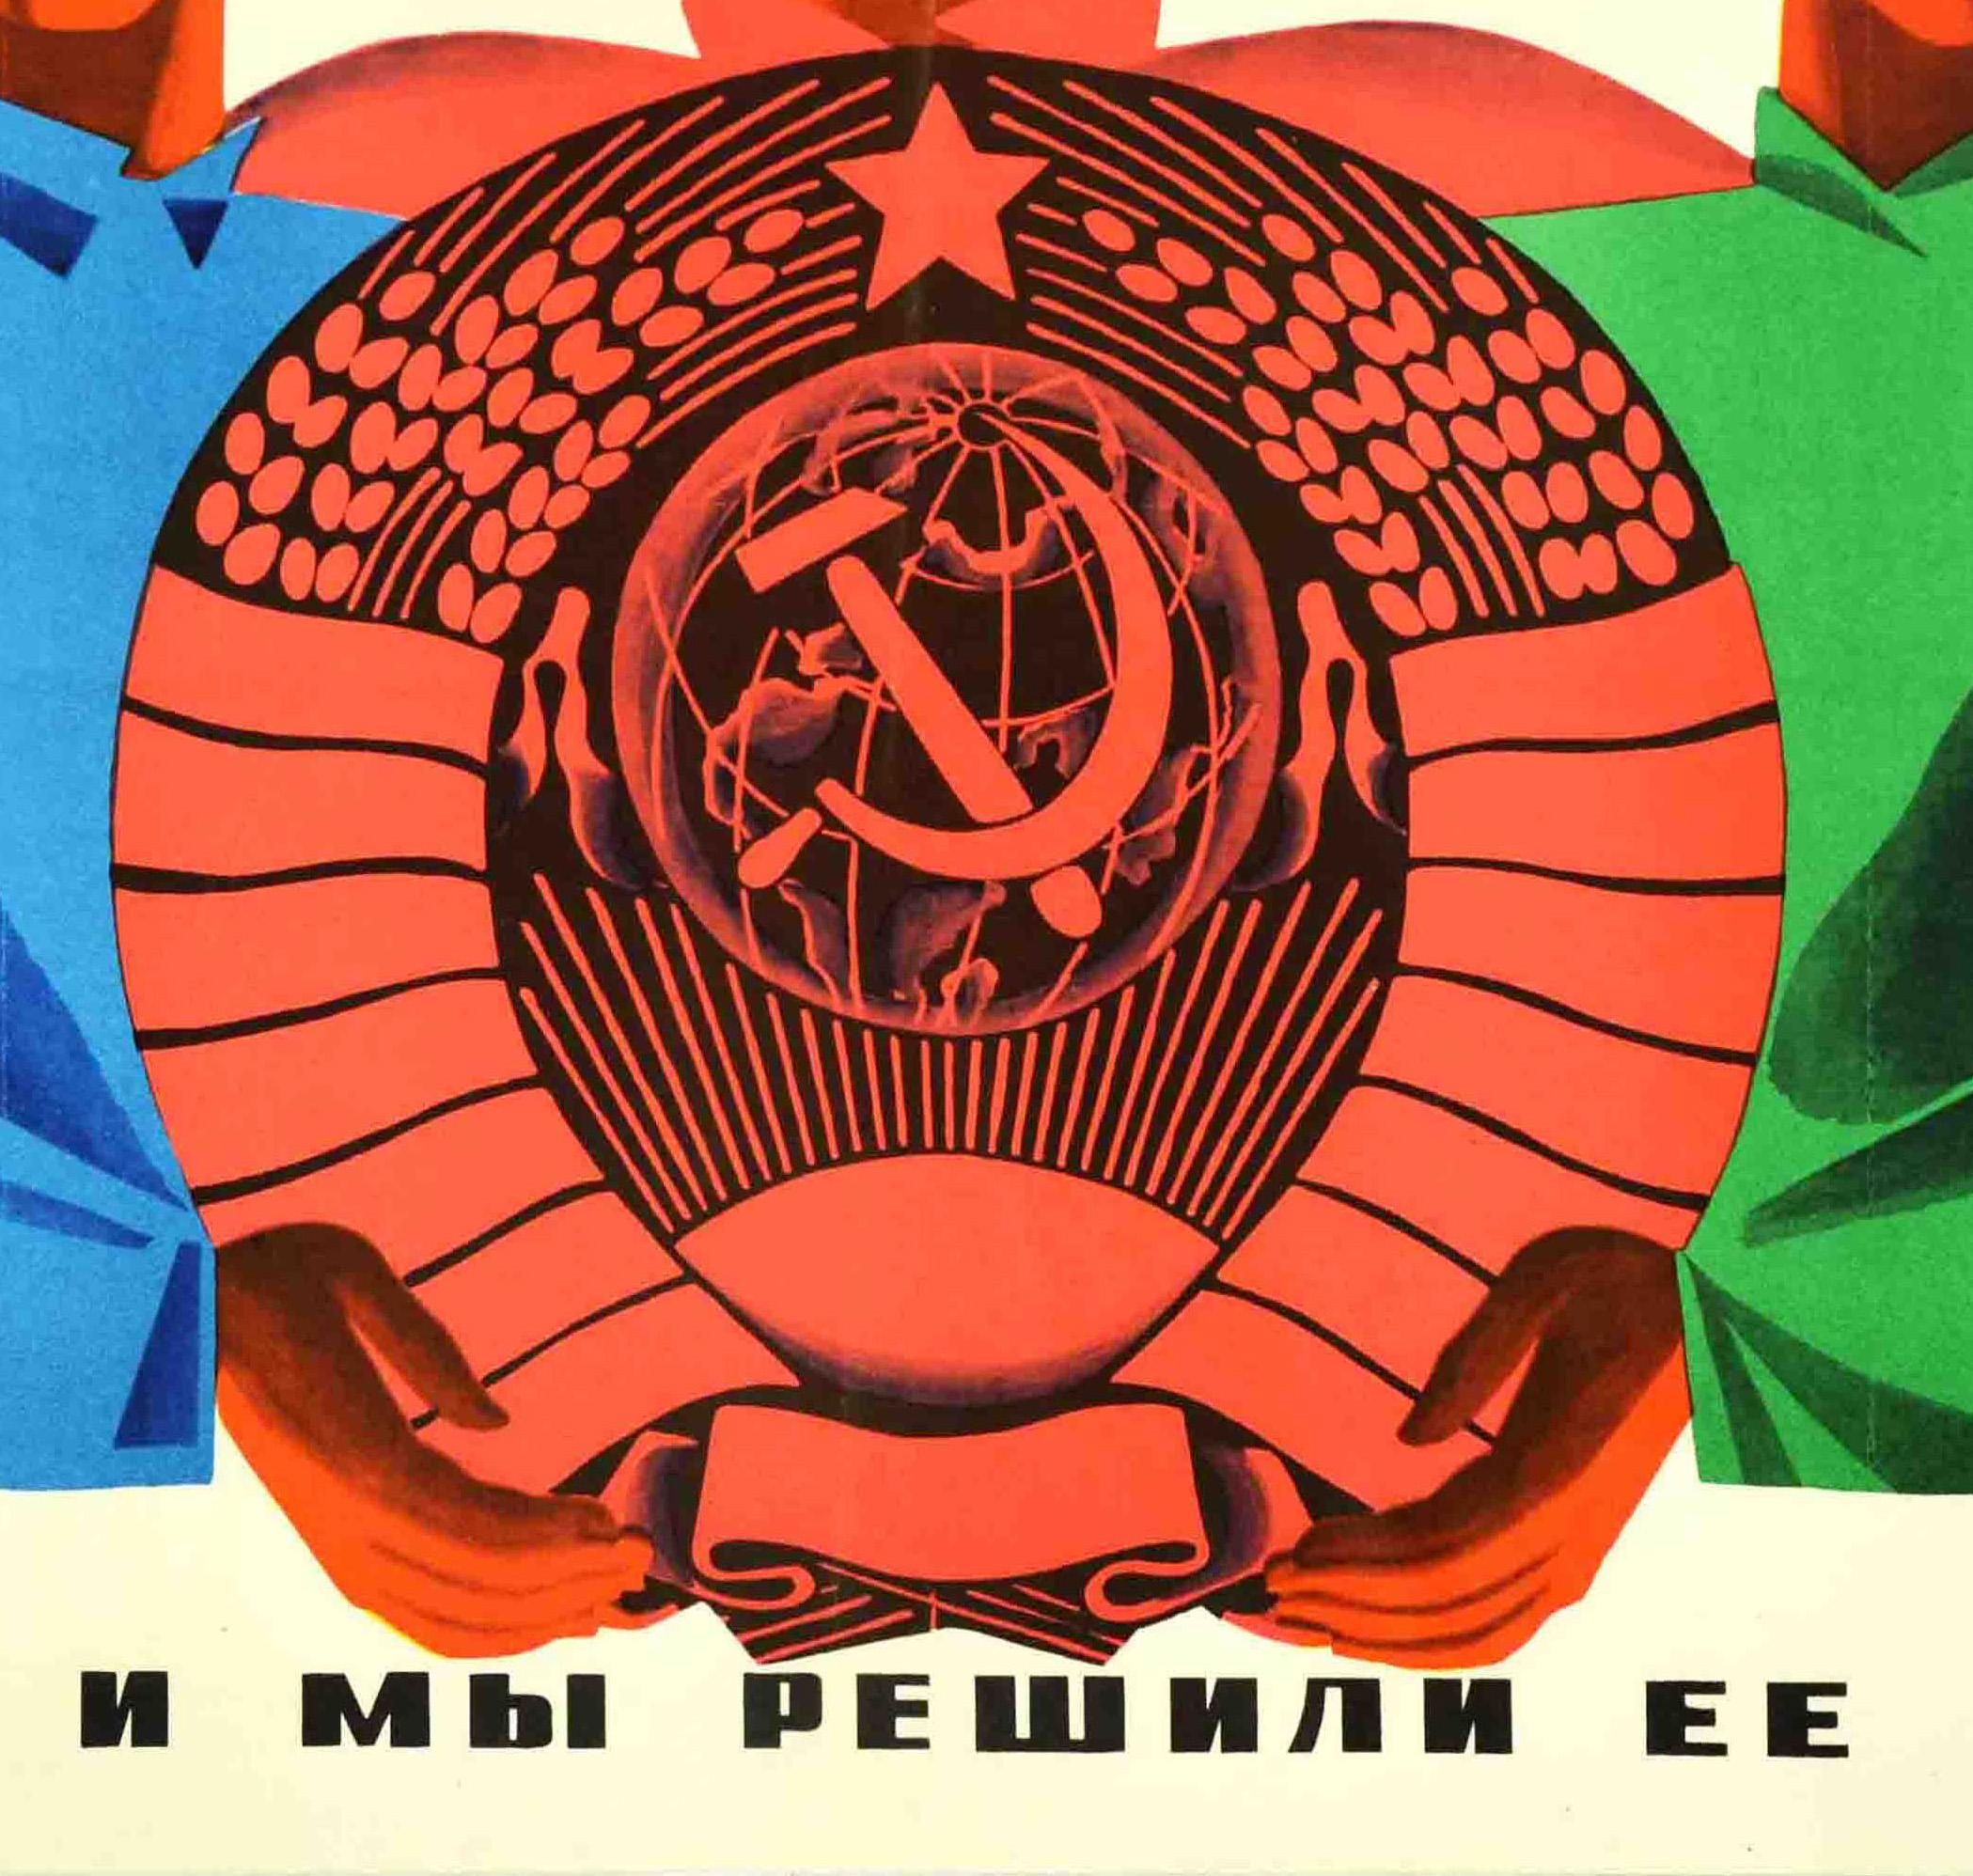 Originales sowjetisches Propagandaplakat im Vintage-Stil - Wir haben uns die Aufgabe gestellt, den ethnischen Streit und die Unterdrückung zu beenden, und wir haben sie gelöst - mit einem Bild von drei Männern verschiedener Nationalitäten, wobei der